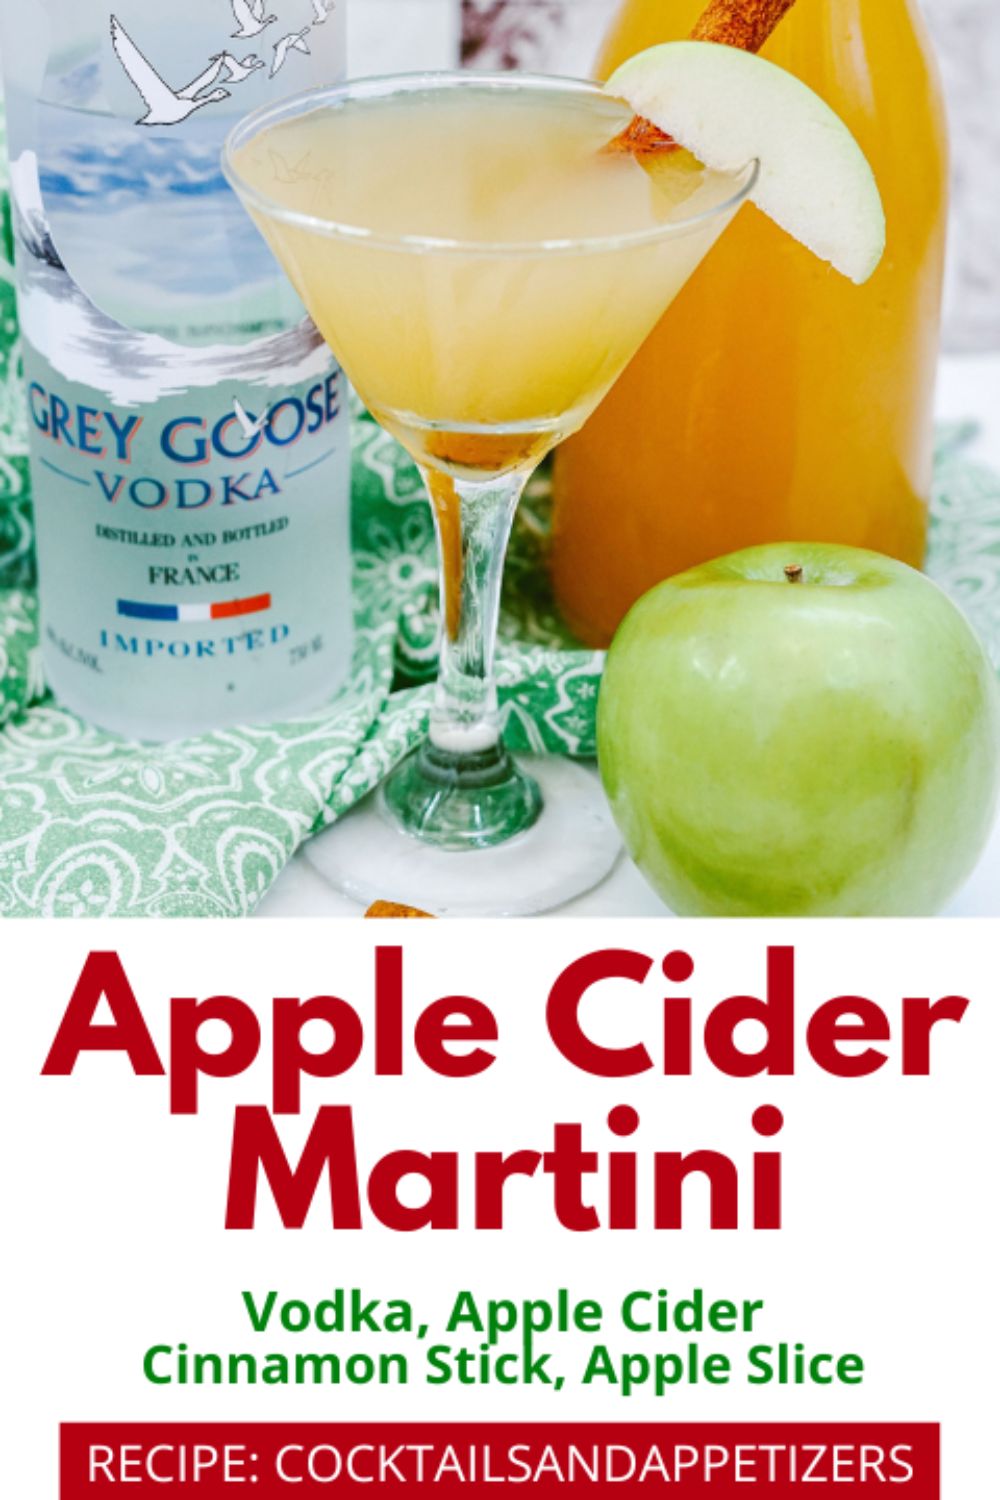 Apple Cider Martini in a martini glass